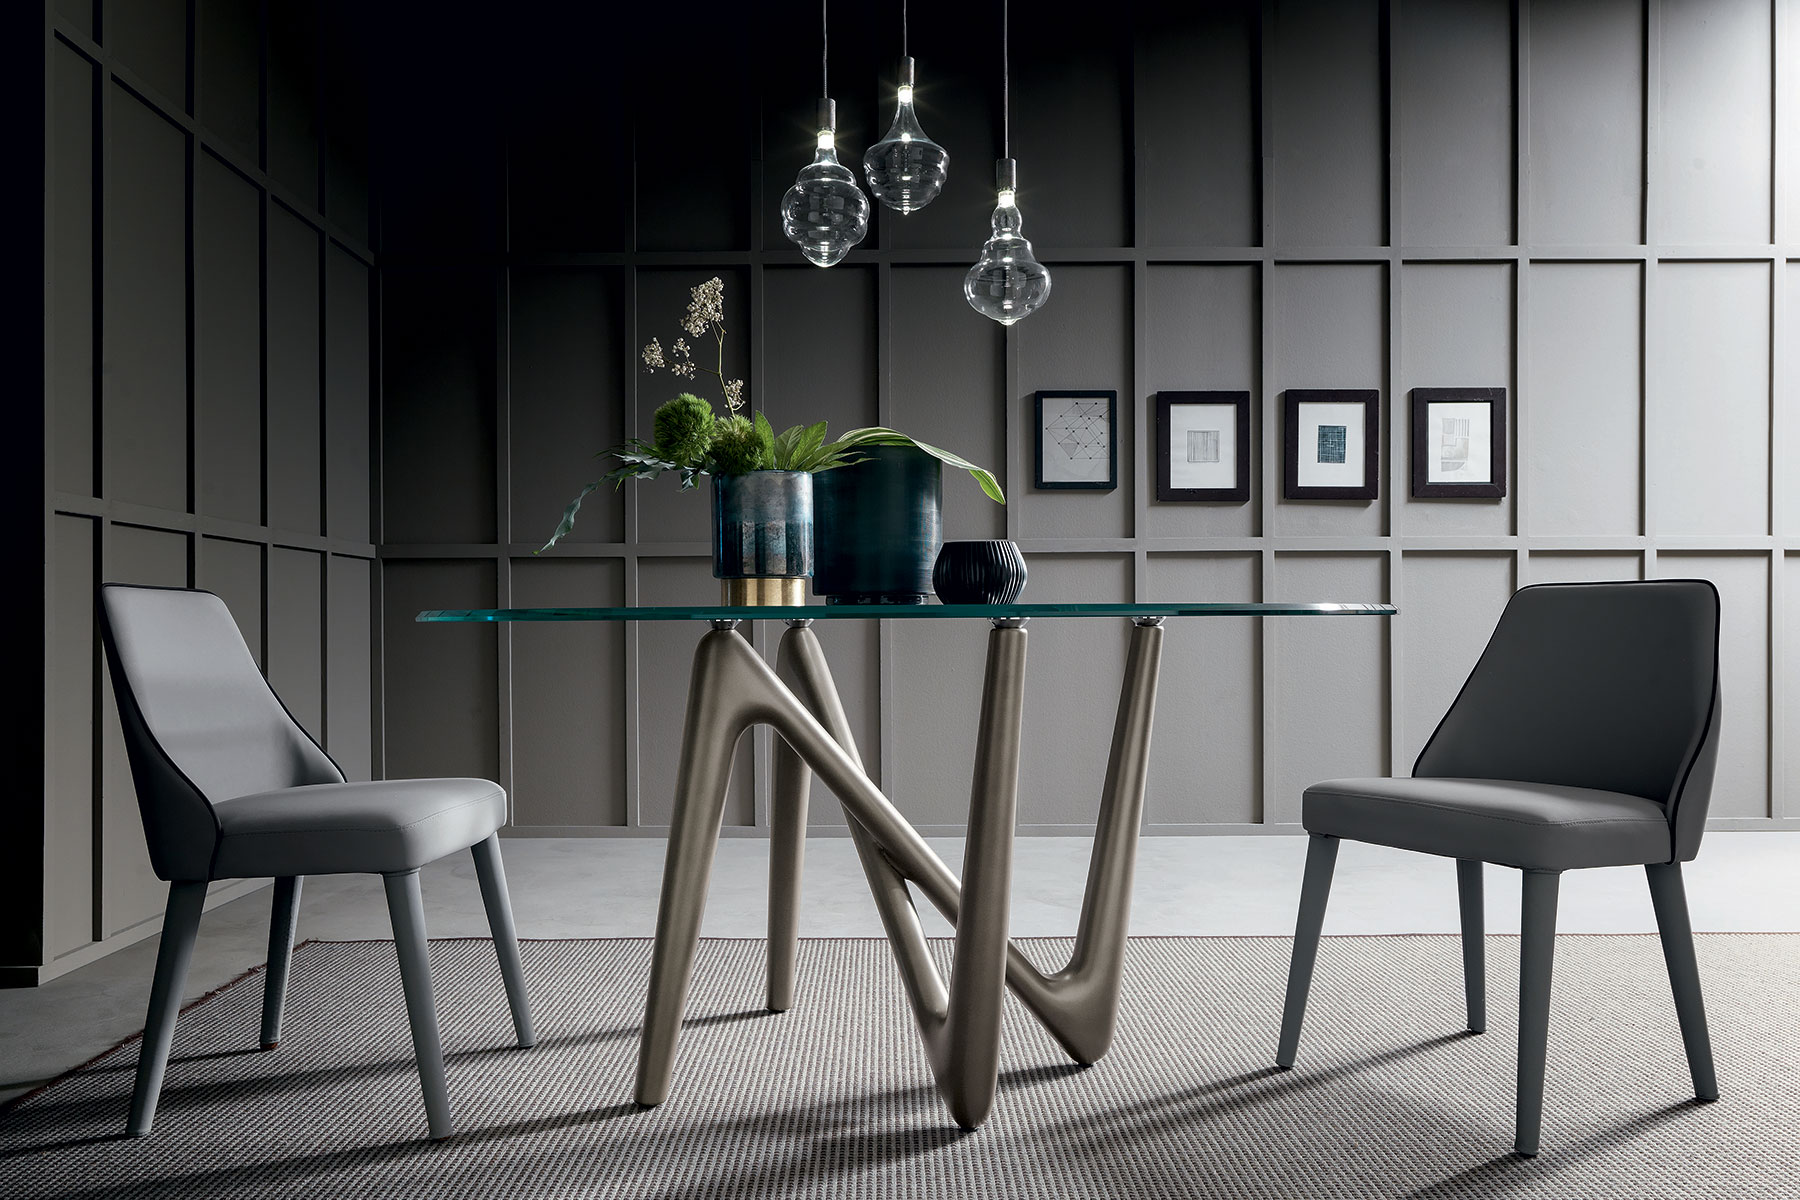 Vente en ligne de meubles haut de gamme de production italienne. Table ronde en verre transparent. Design Andrea Lucatello. Livraison à domicile gratuite.